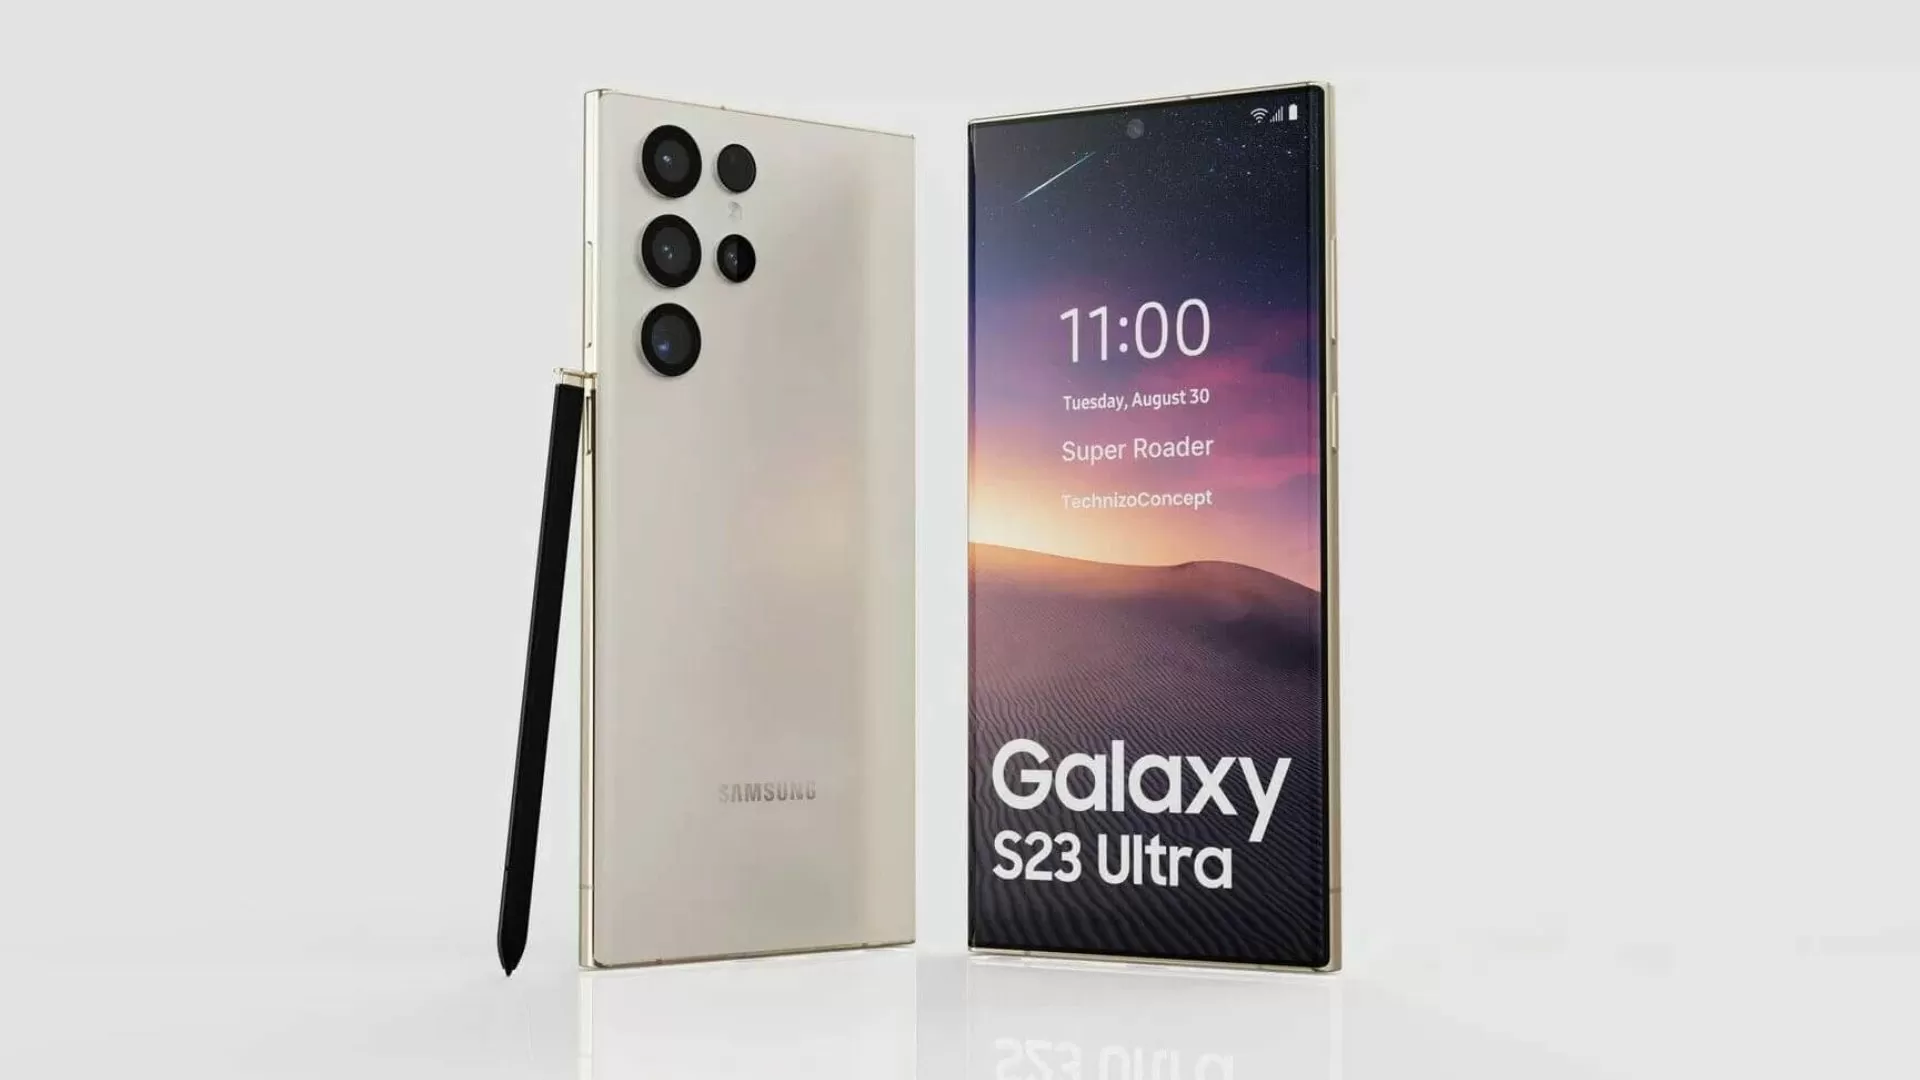  Samsung Galaxy S23 Ultra